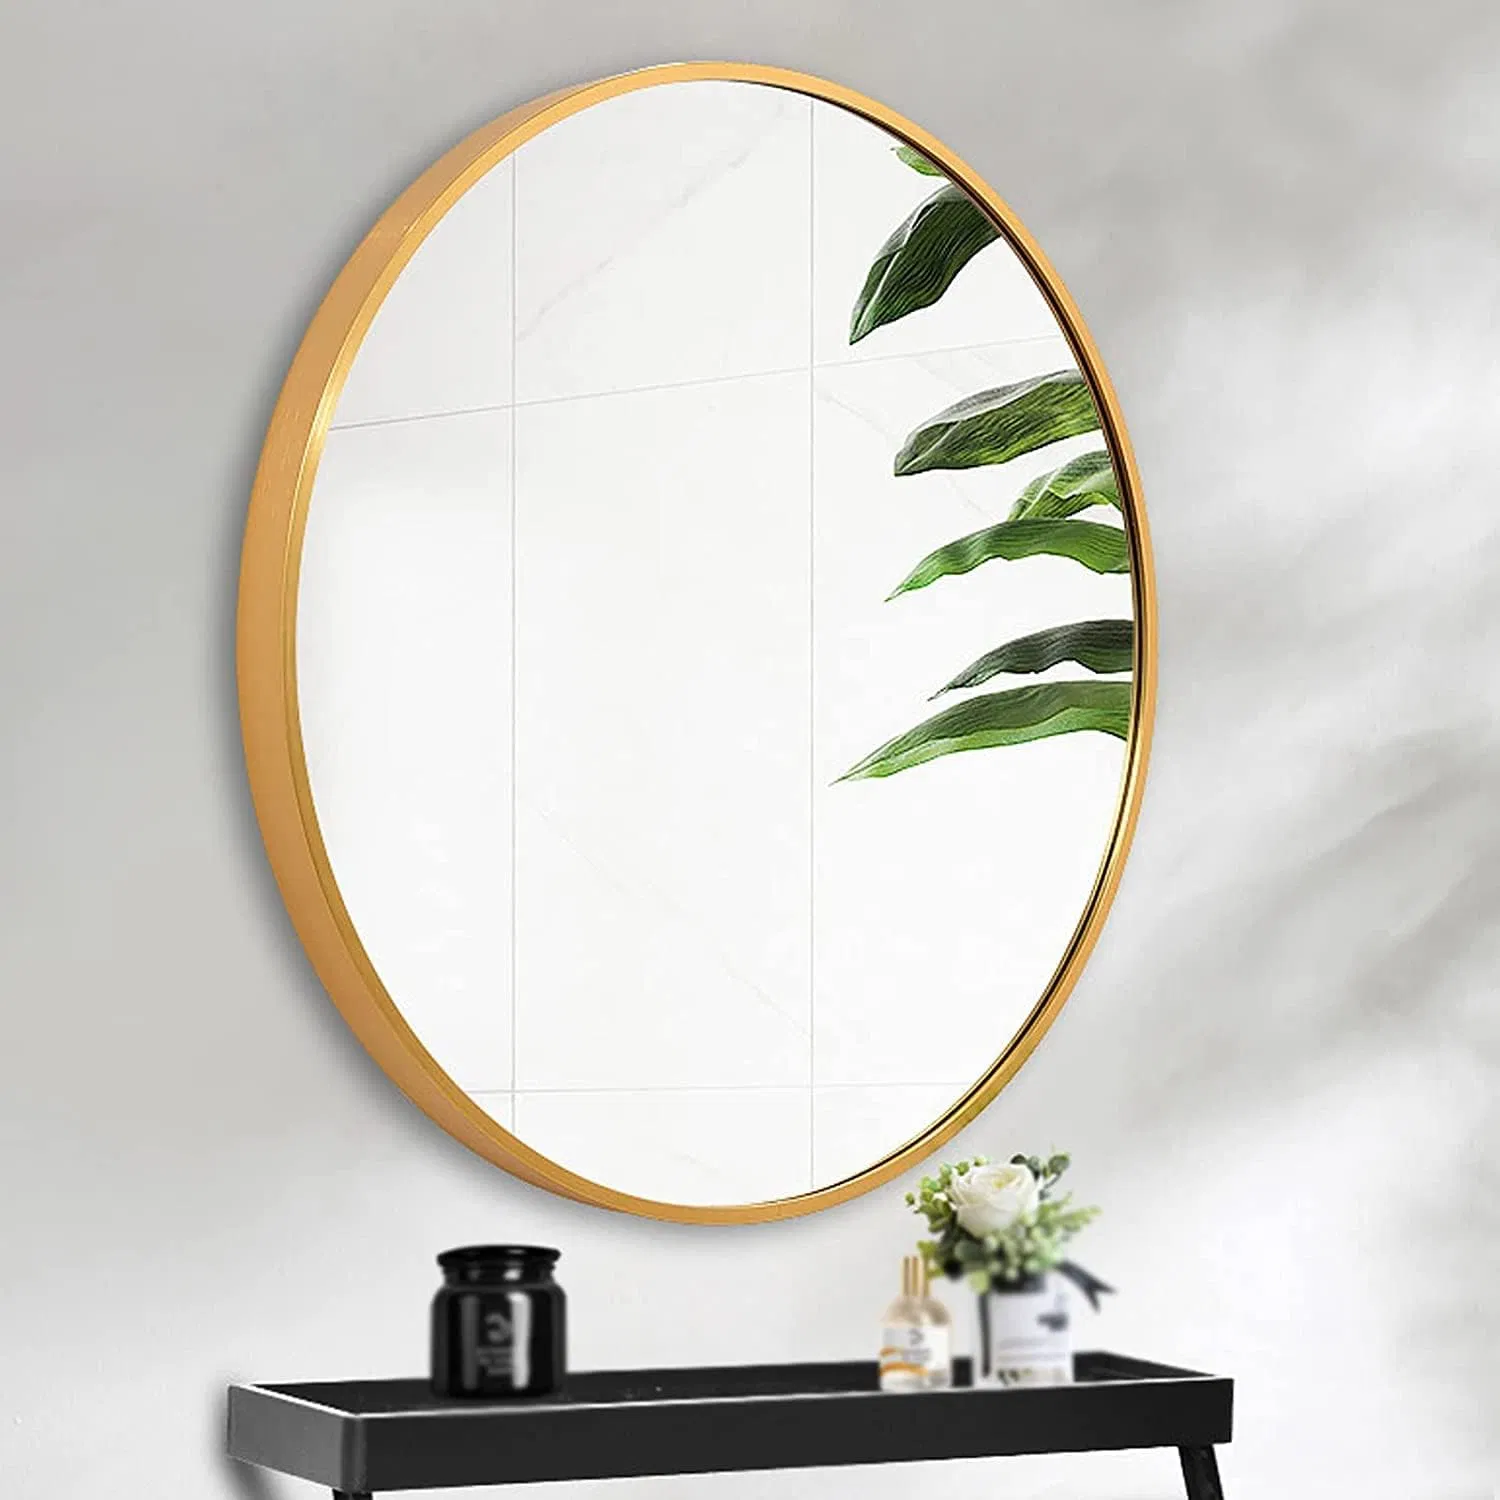 Miroir rond carré décoratif doré, forme rectangulaire noire, debout au sol, en métal, pleine longueur, pour salle de bains, maquillage, avec cadre en aluminium, accroché au mur.